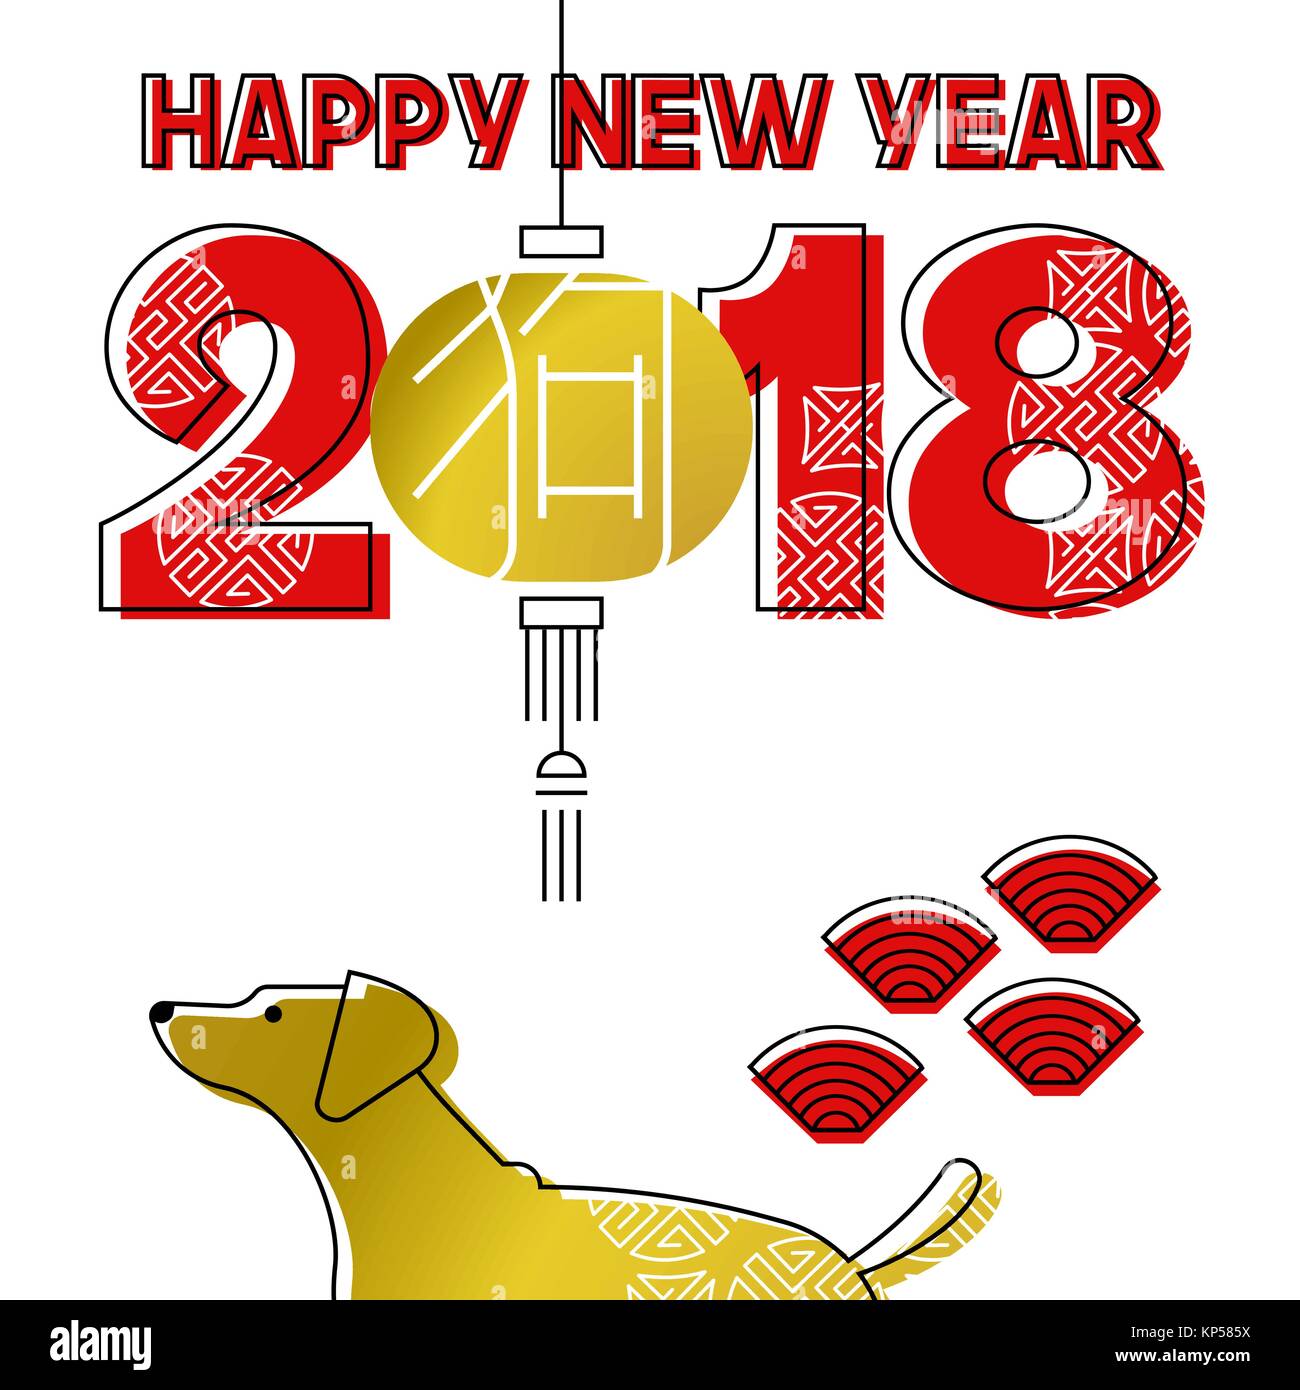 Chinesisches neues Jahr des Hundes moderne Linie kunst 2018 Grußkarte mit asiatischen Lampe, Welpen und goldene Farbe und Typografie. EPS 10 Vektor. Stock Vektor